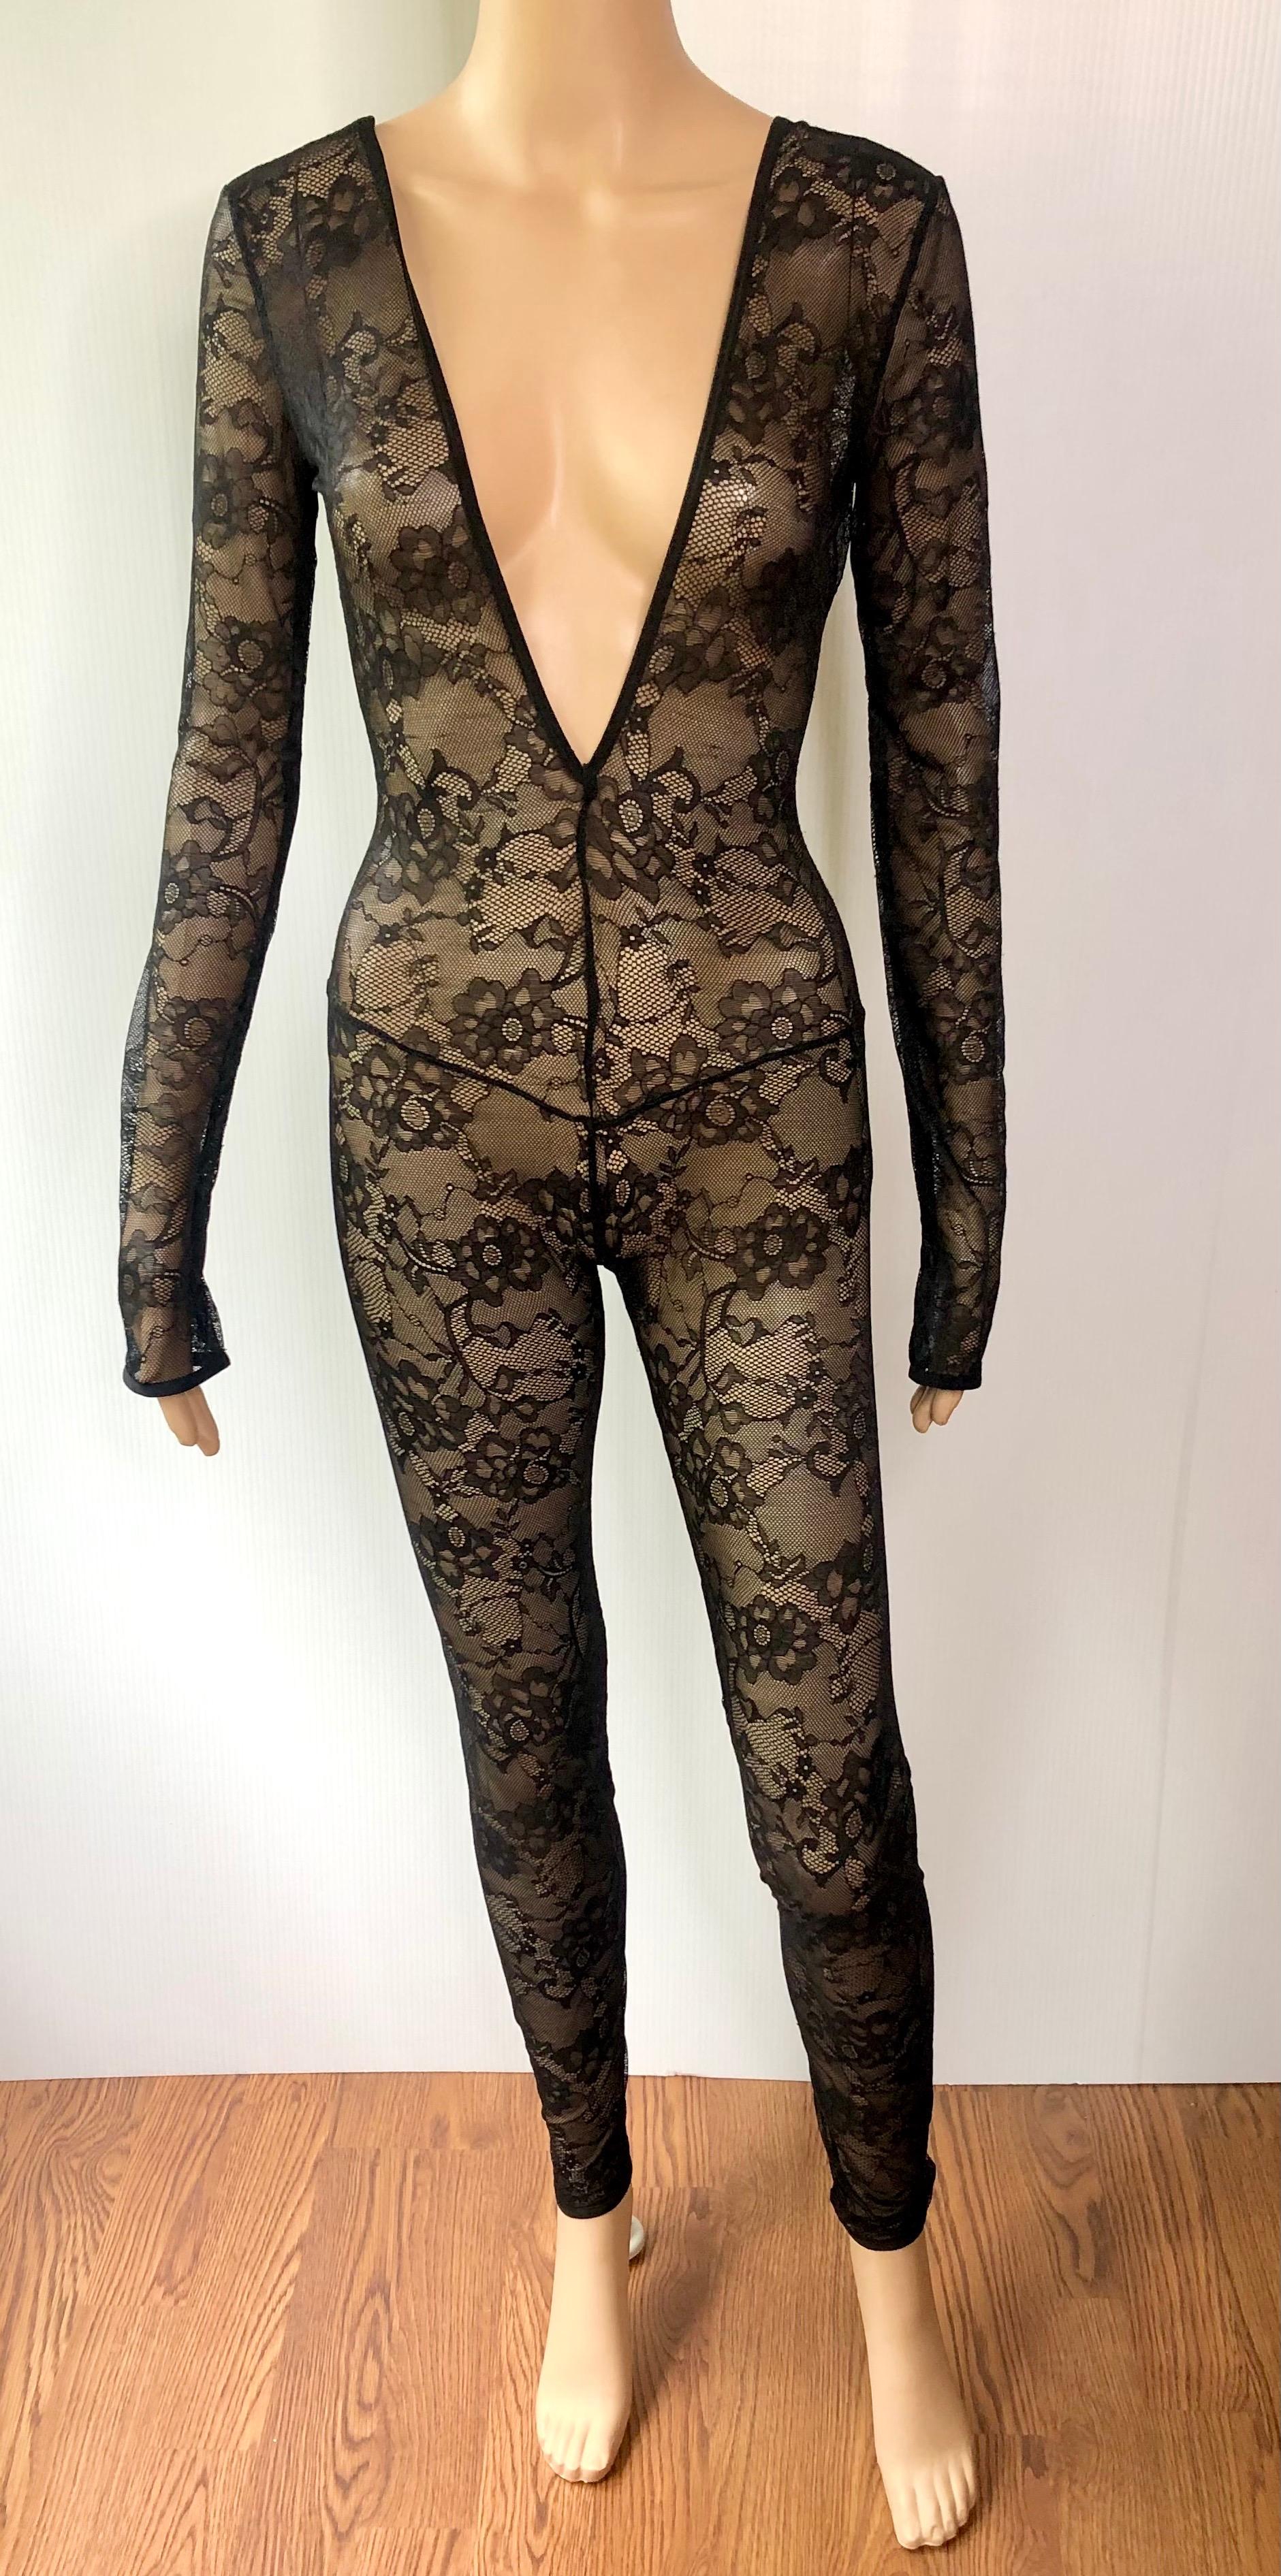 Gucci tiefer Ausschnitt offener Rücken durchsichtige Spitze Bodycon Schwarz Playsuit Jumpsuit 5